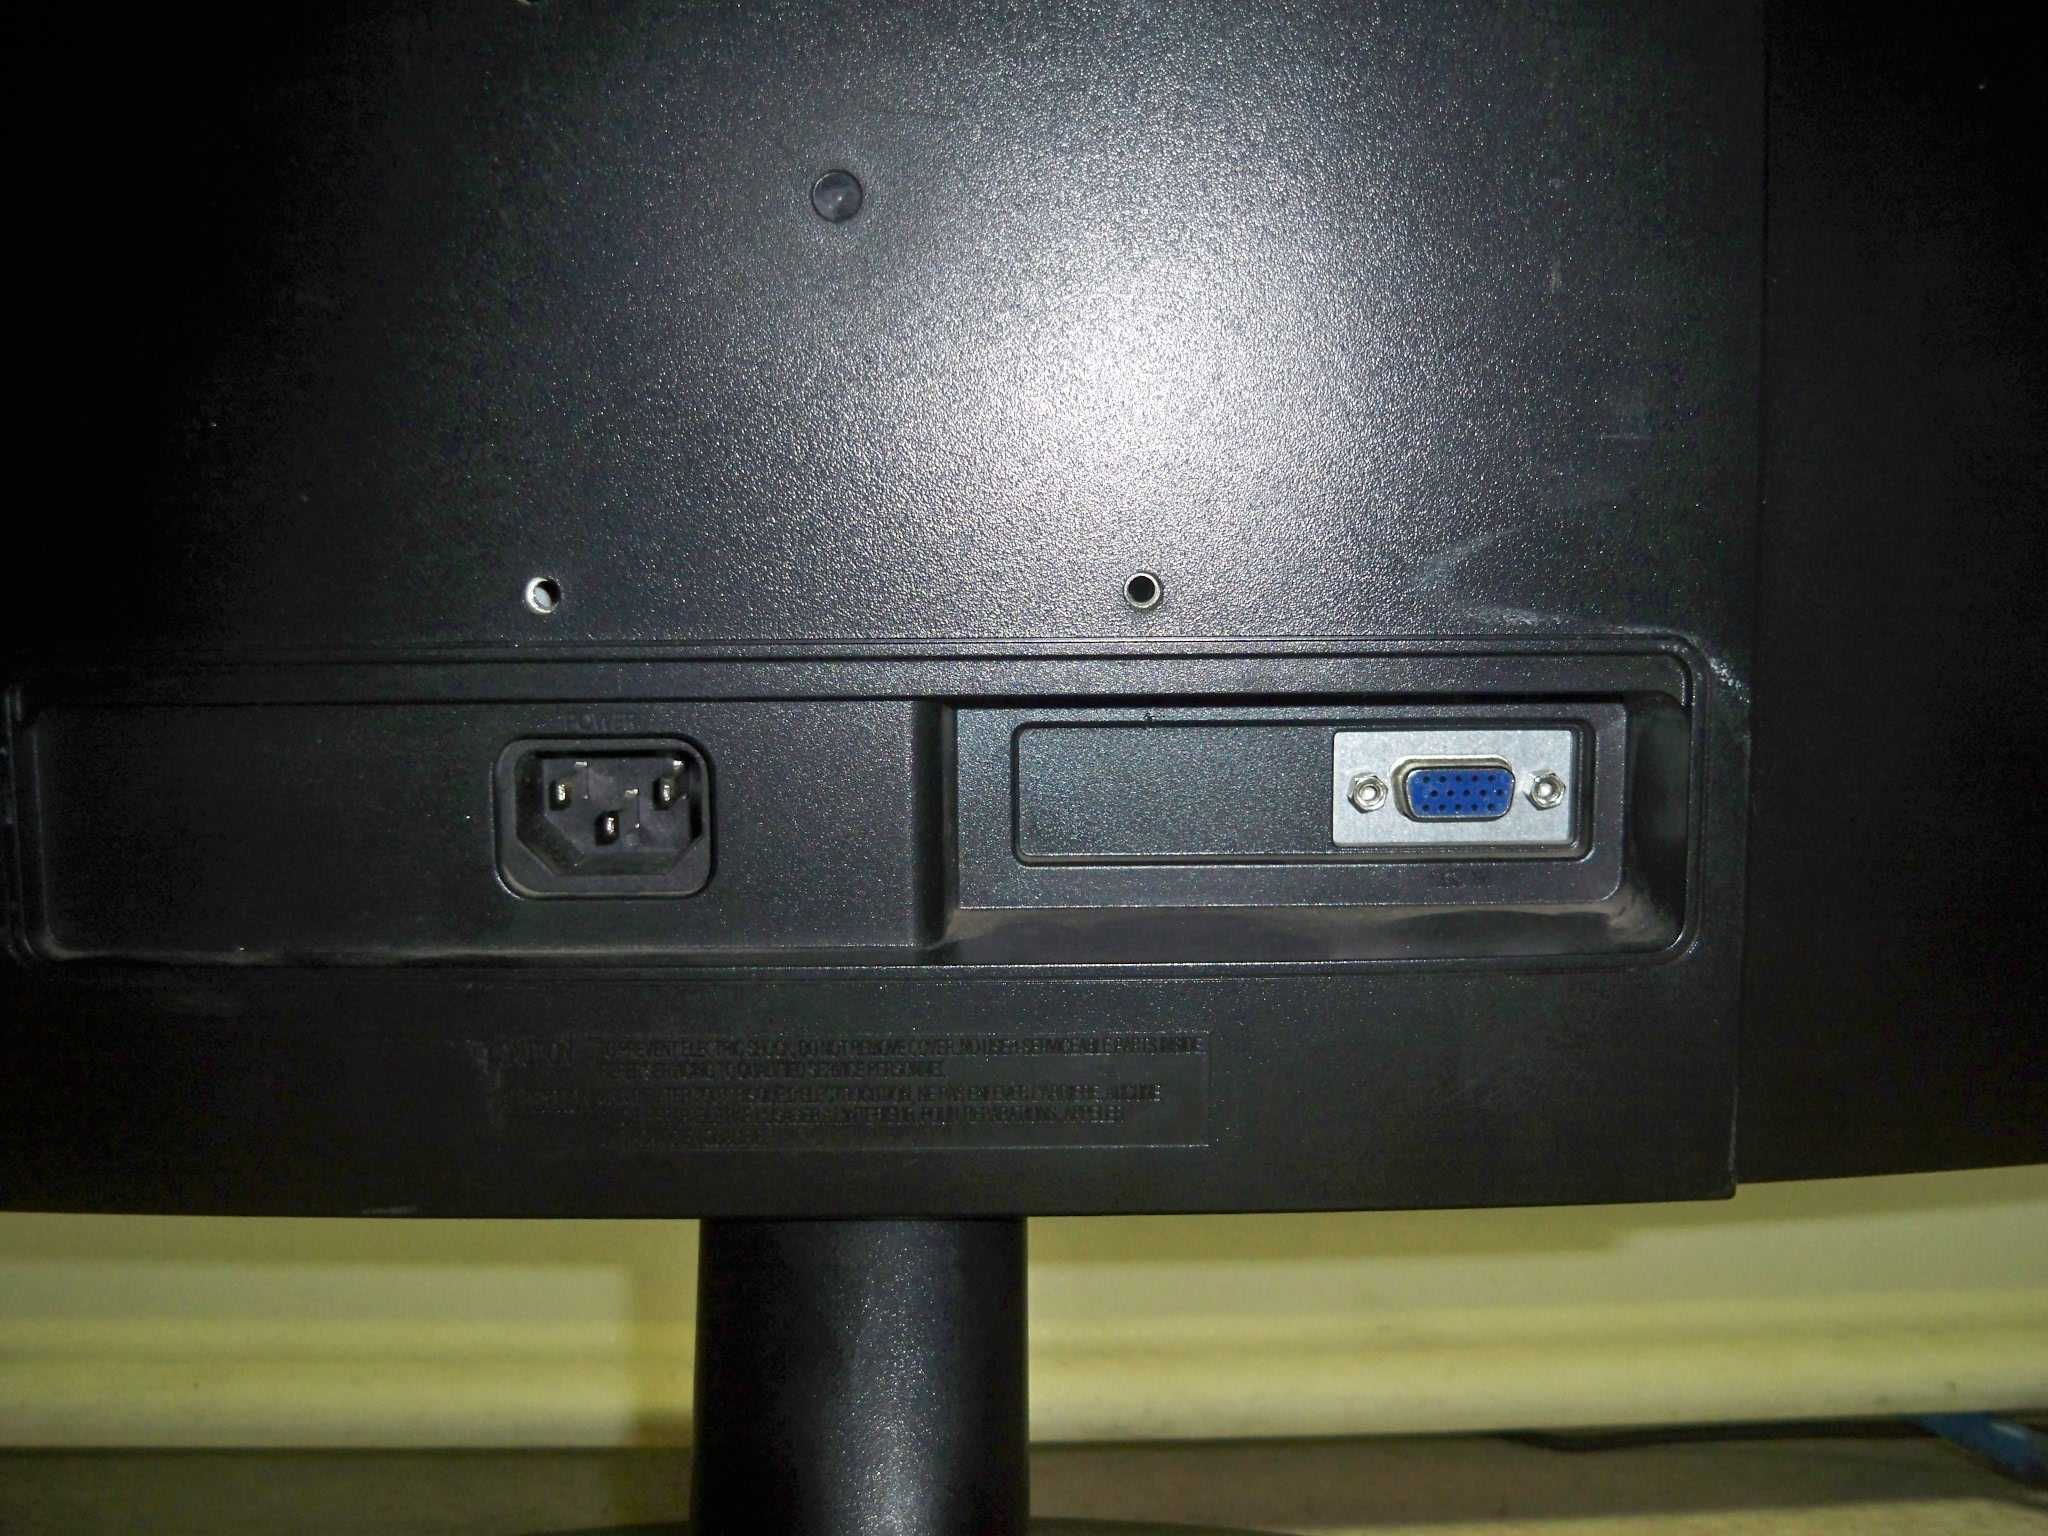 Монитор TFT(LCD) Samsung E1920 19" дюймов, широкоформатный.